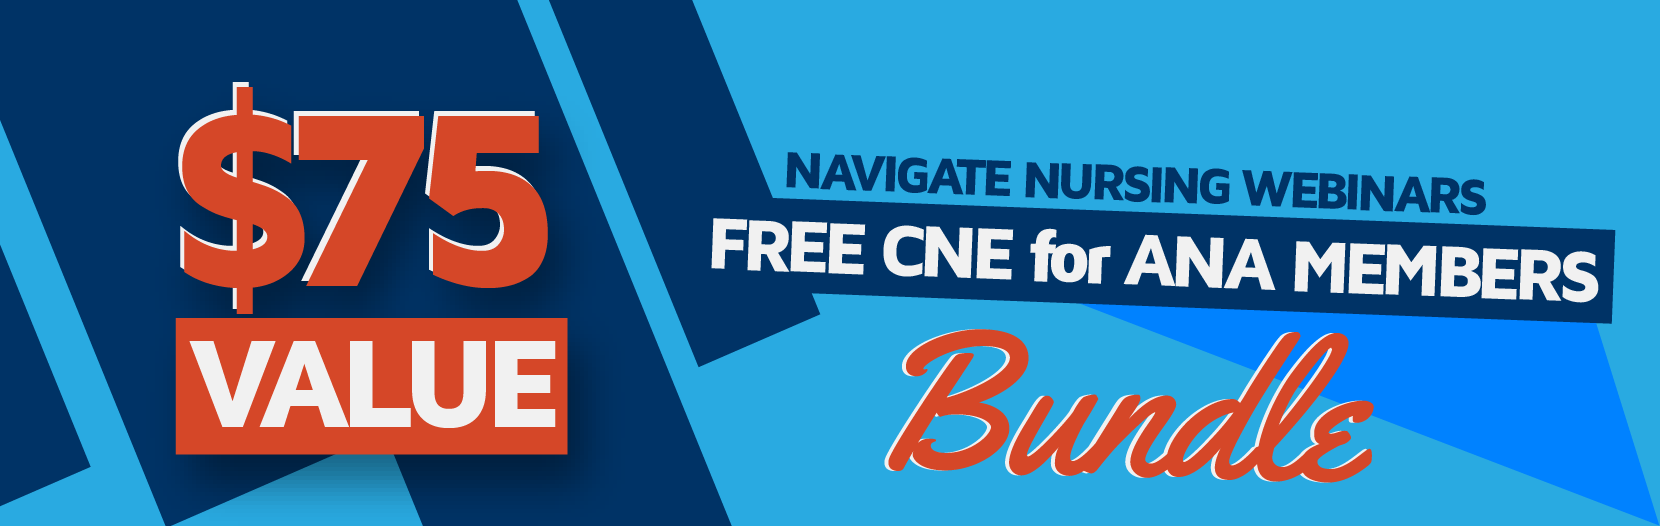 navigate-nursing-banners_$75-value CNE.png